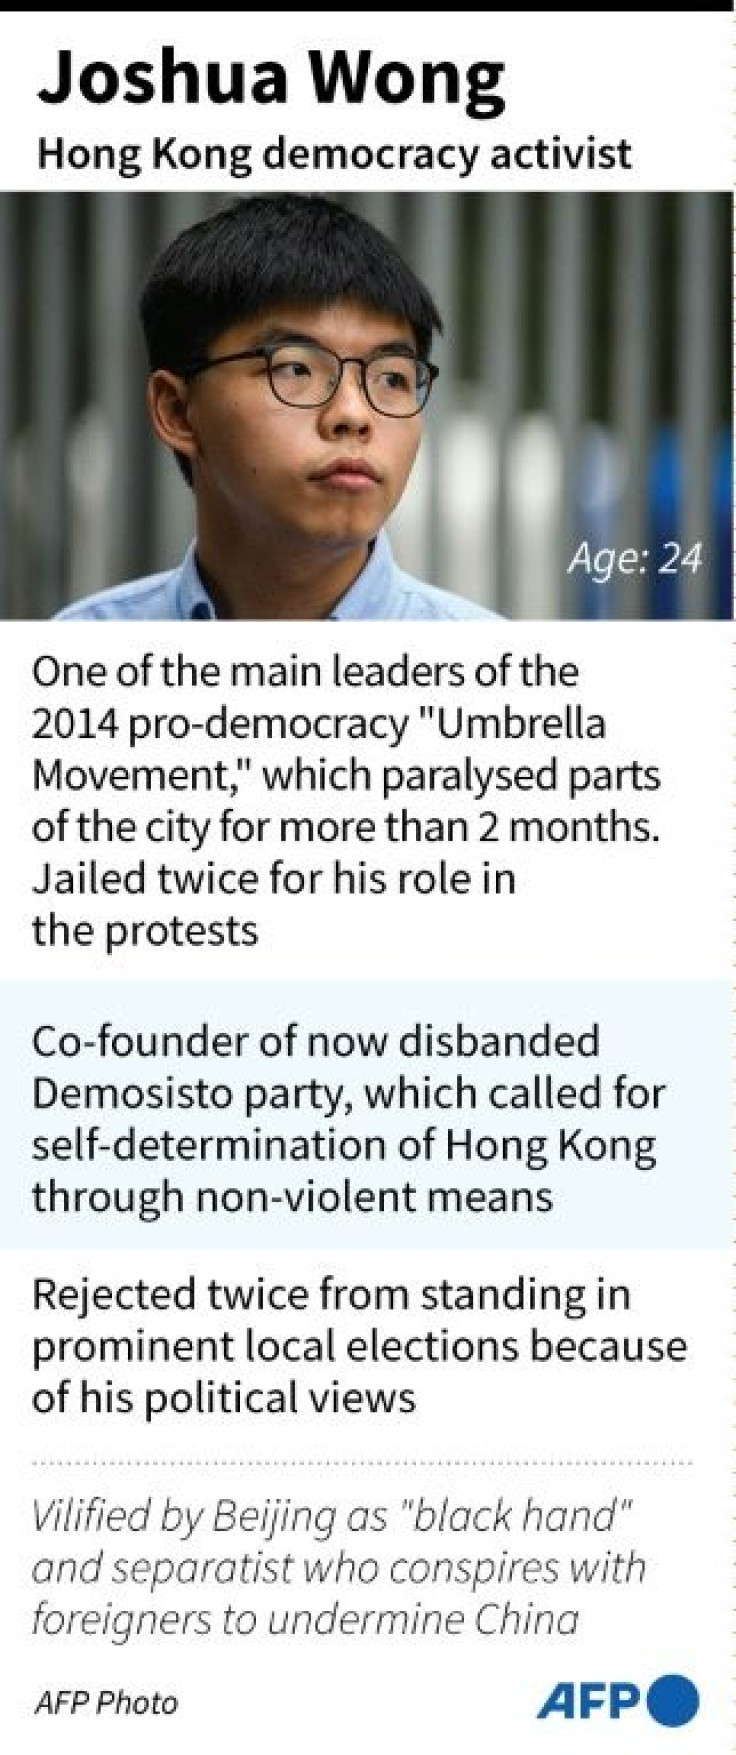 Profile of Hong Kong pro-democracy activist Joshua Wong